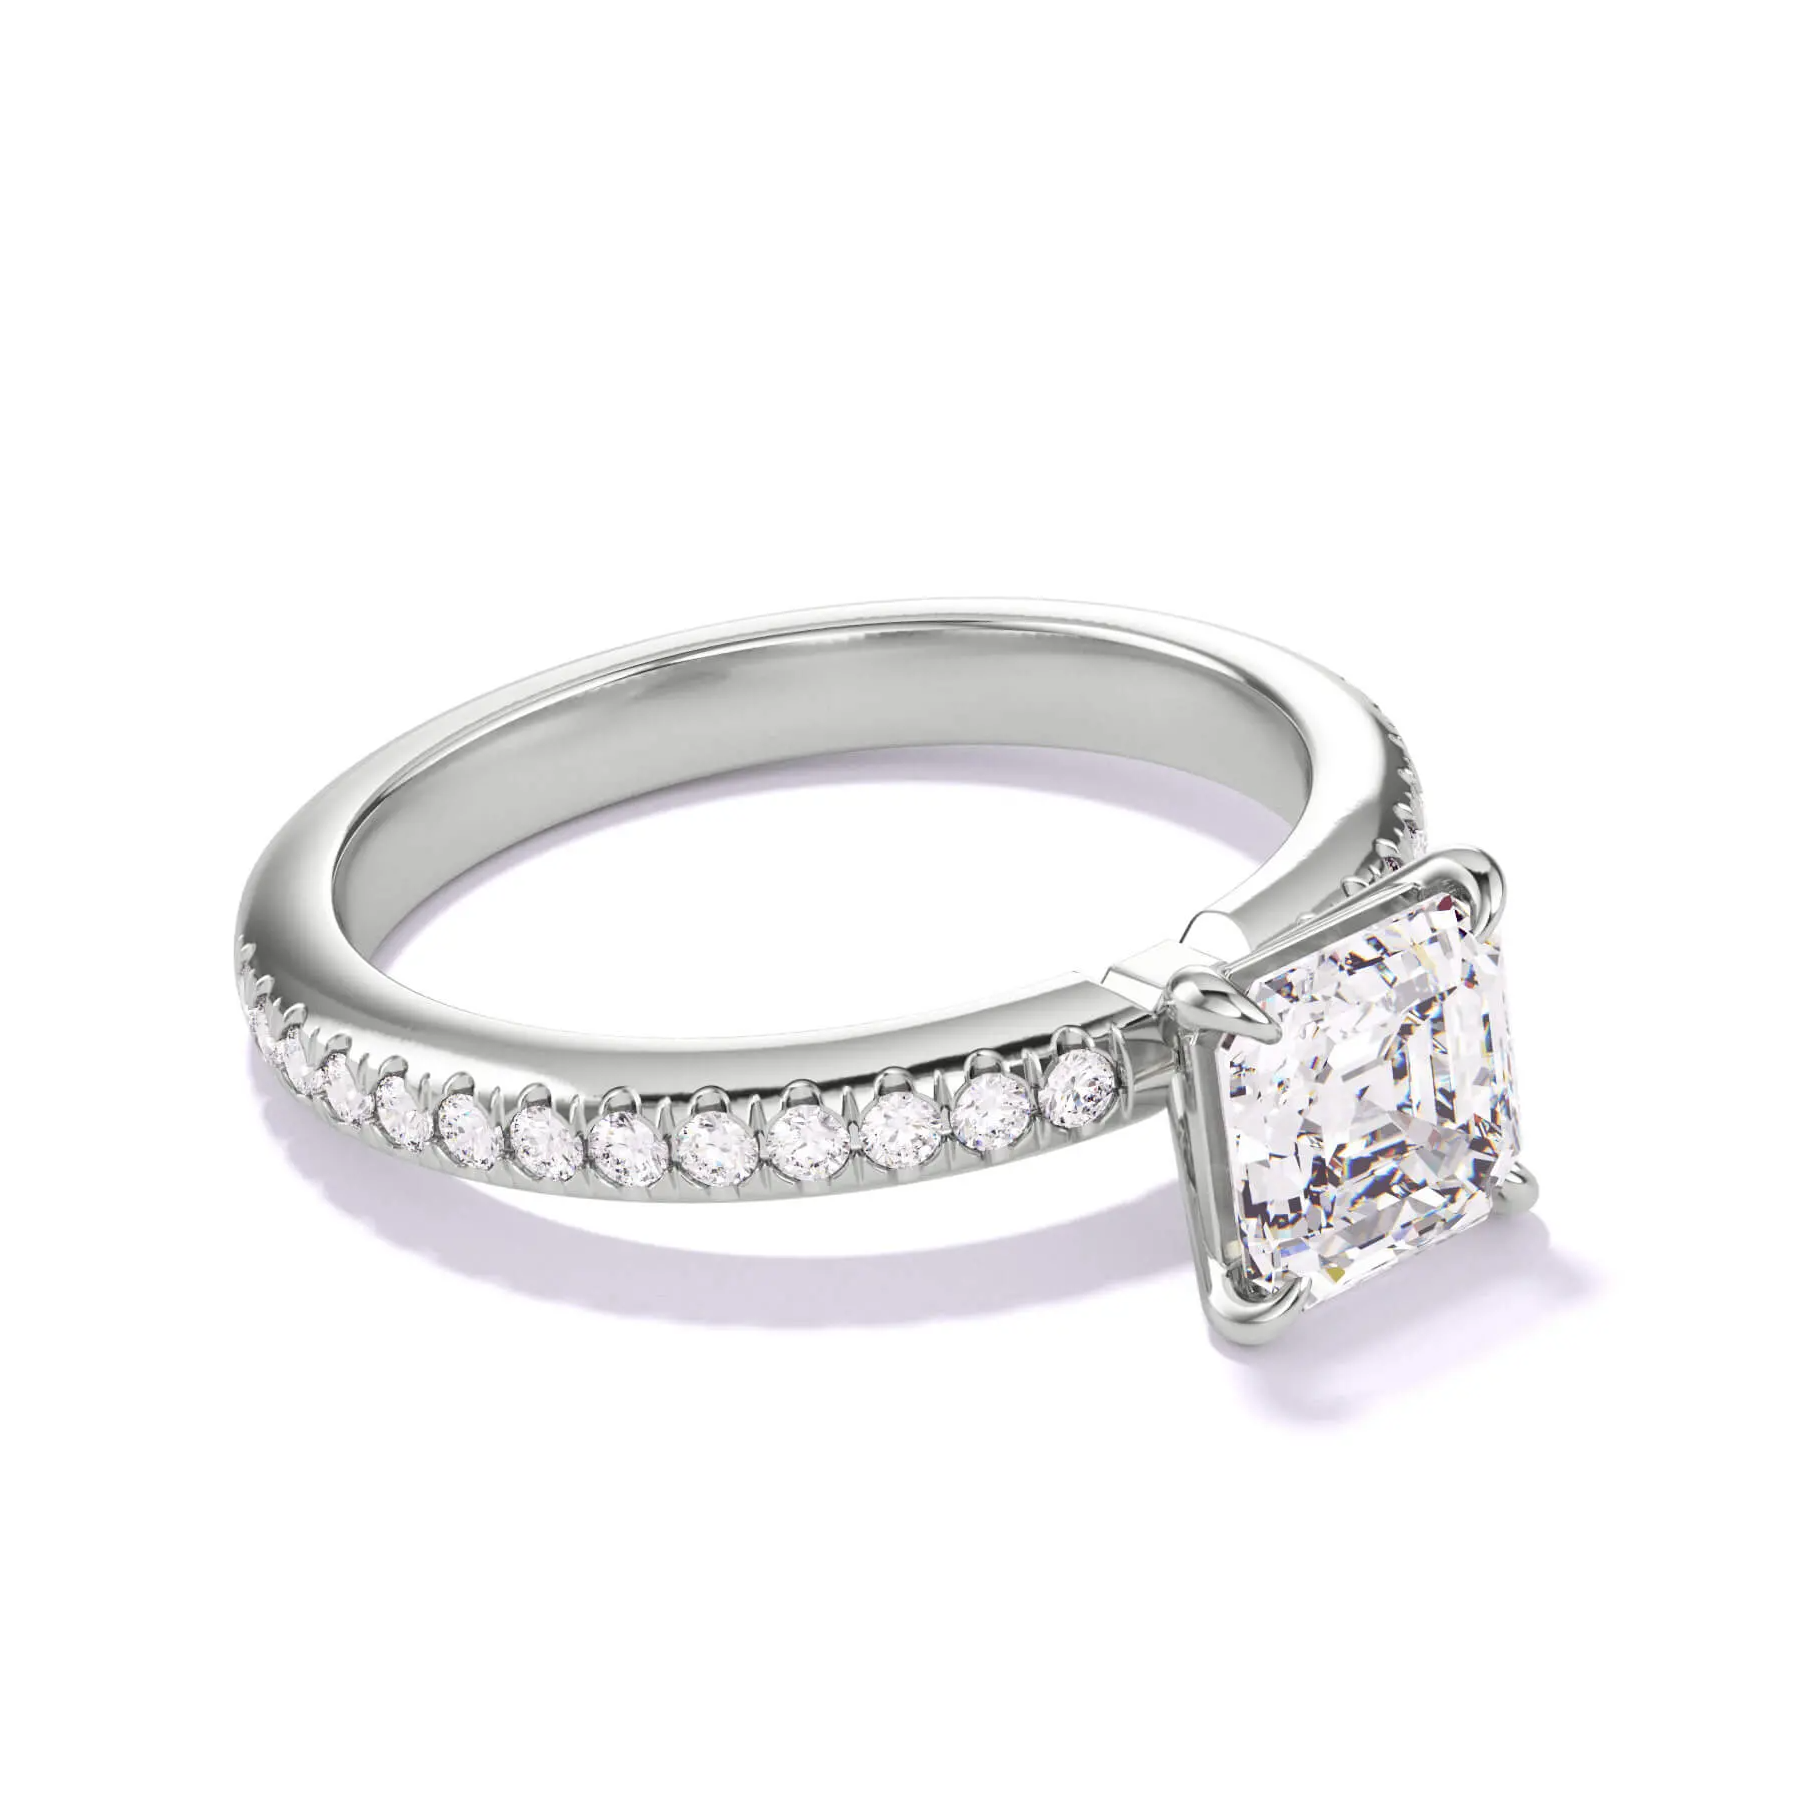 $10,000 diamond engagement ring - platinum asscher 